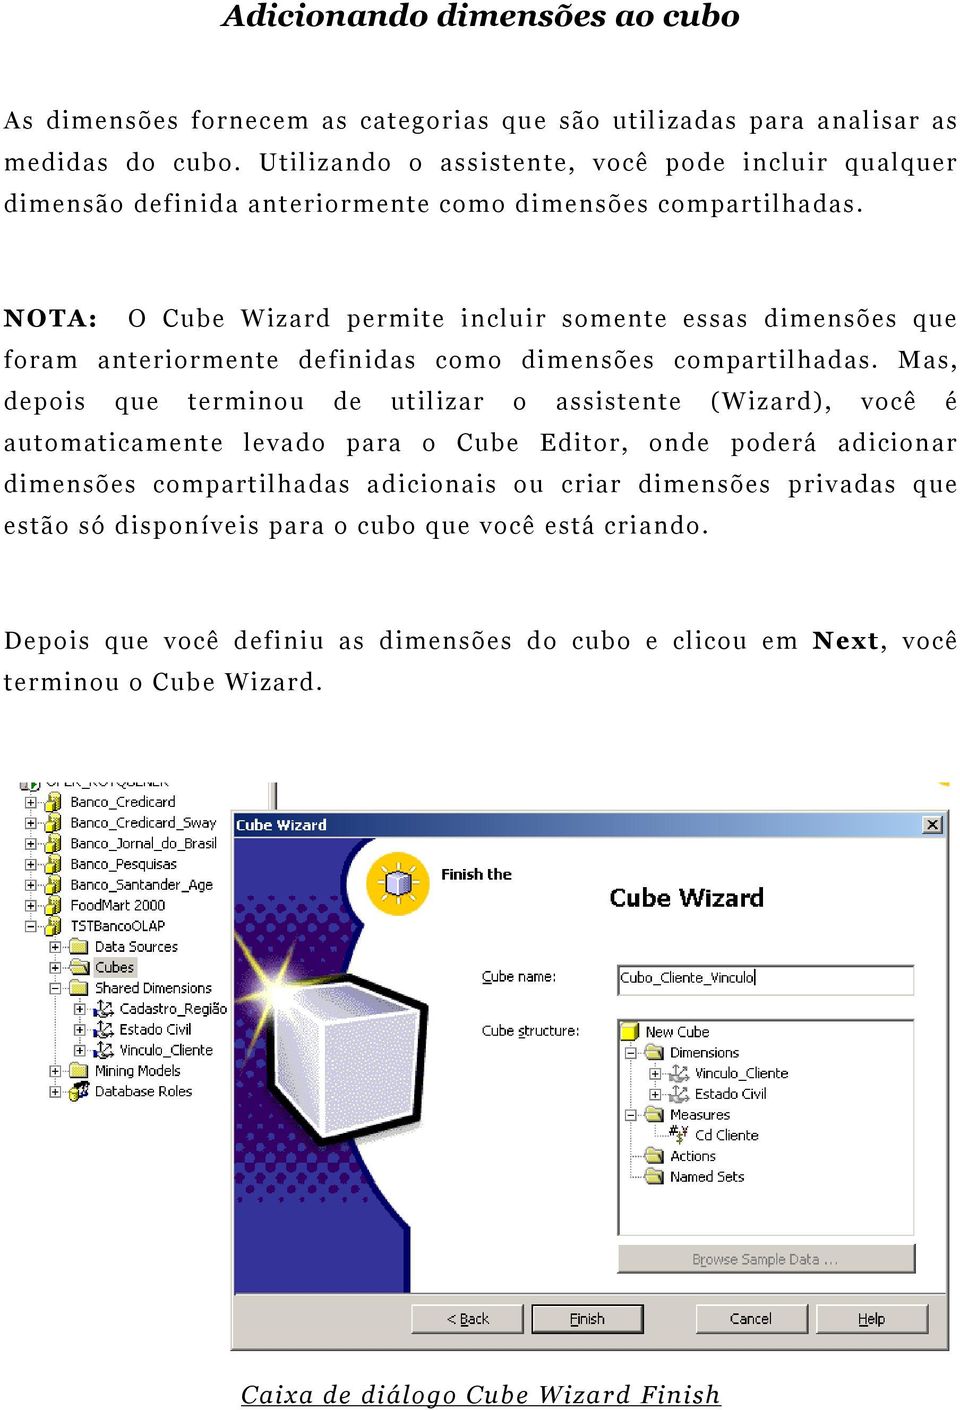 NOTA: O Cube Wizard permite incluir somente essas dimensões que foram anteriormente definidas como dimensões compartilhadas.